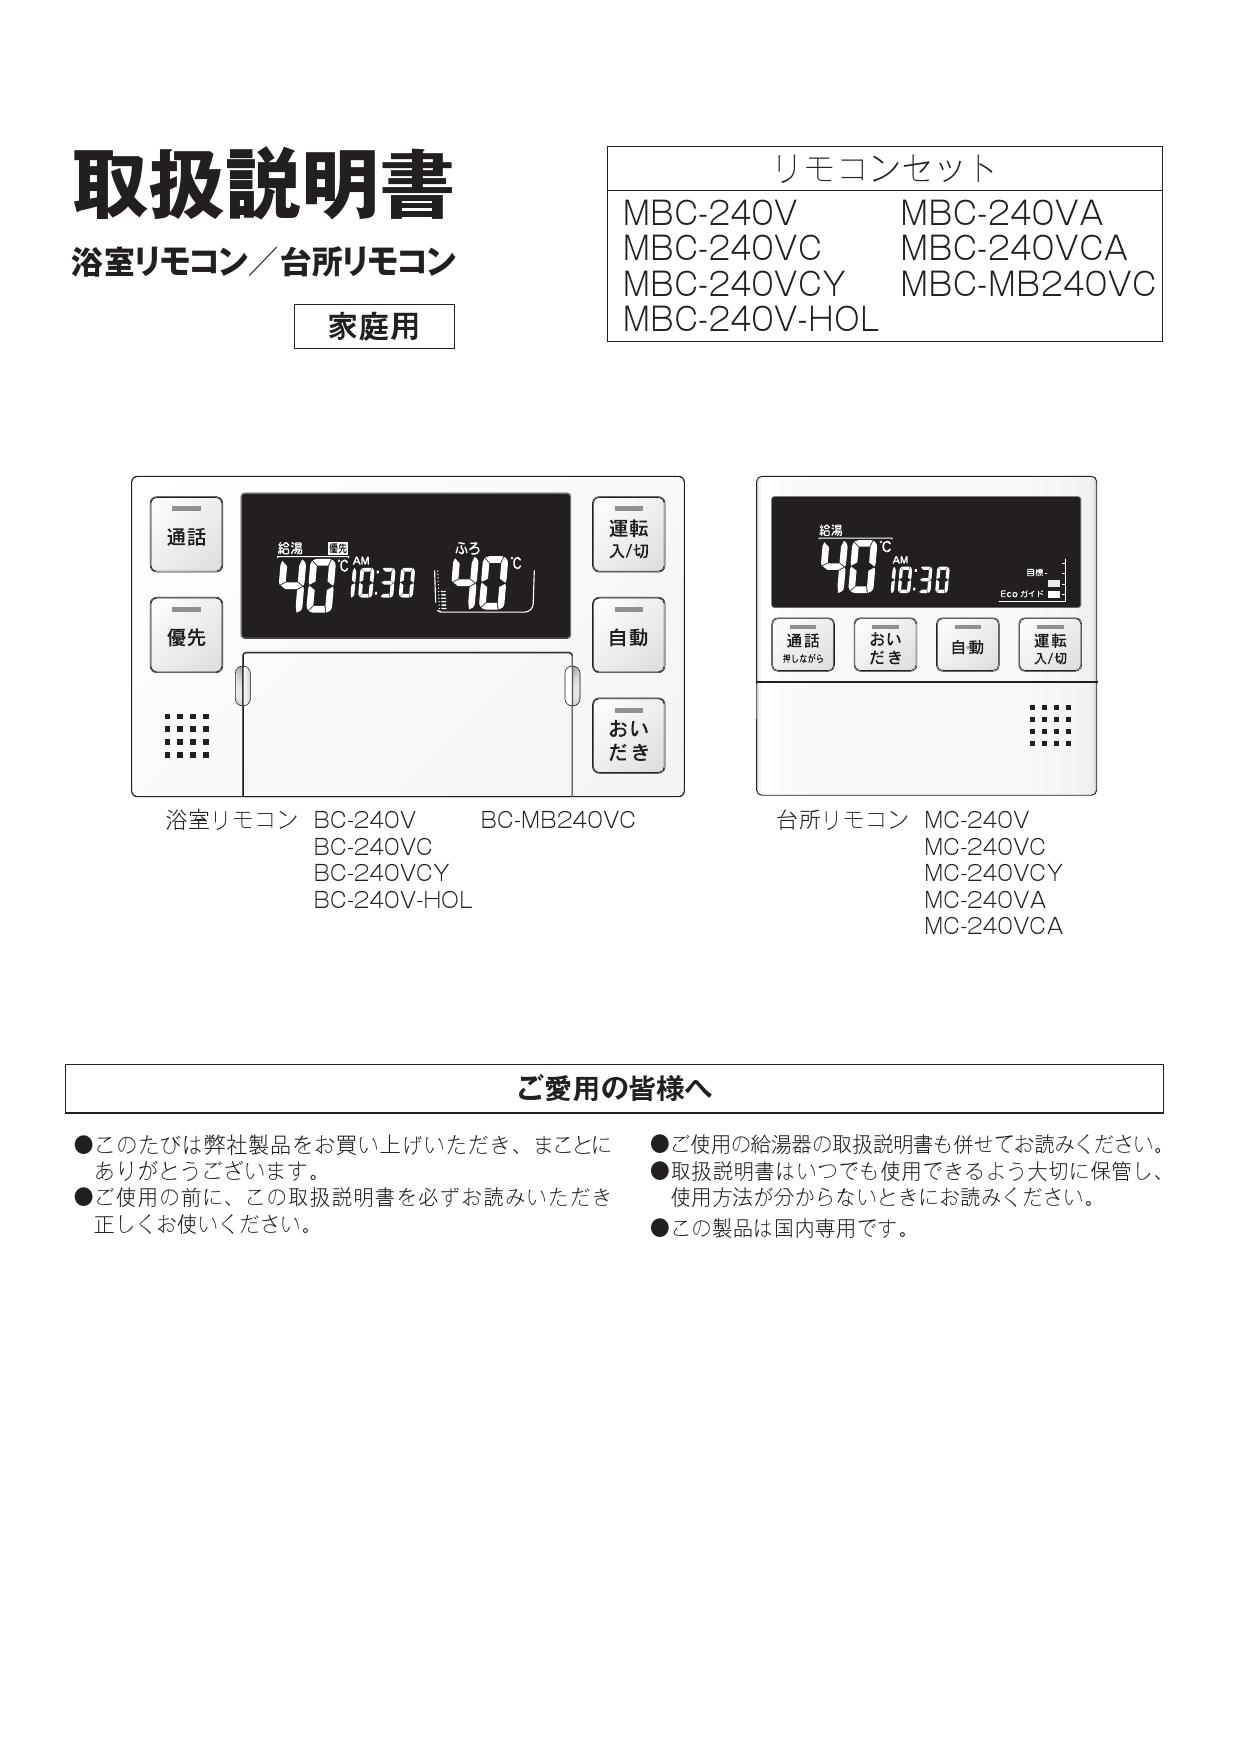 春のコレクション Rinnai MBC-240VC A 240シリーズ ガスふろ給湯器用リモコンセット 浴室リモコン 台所リモコン 